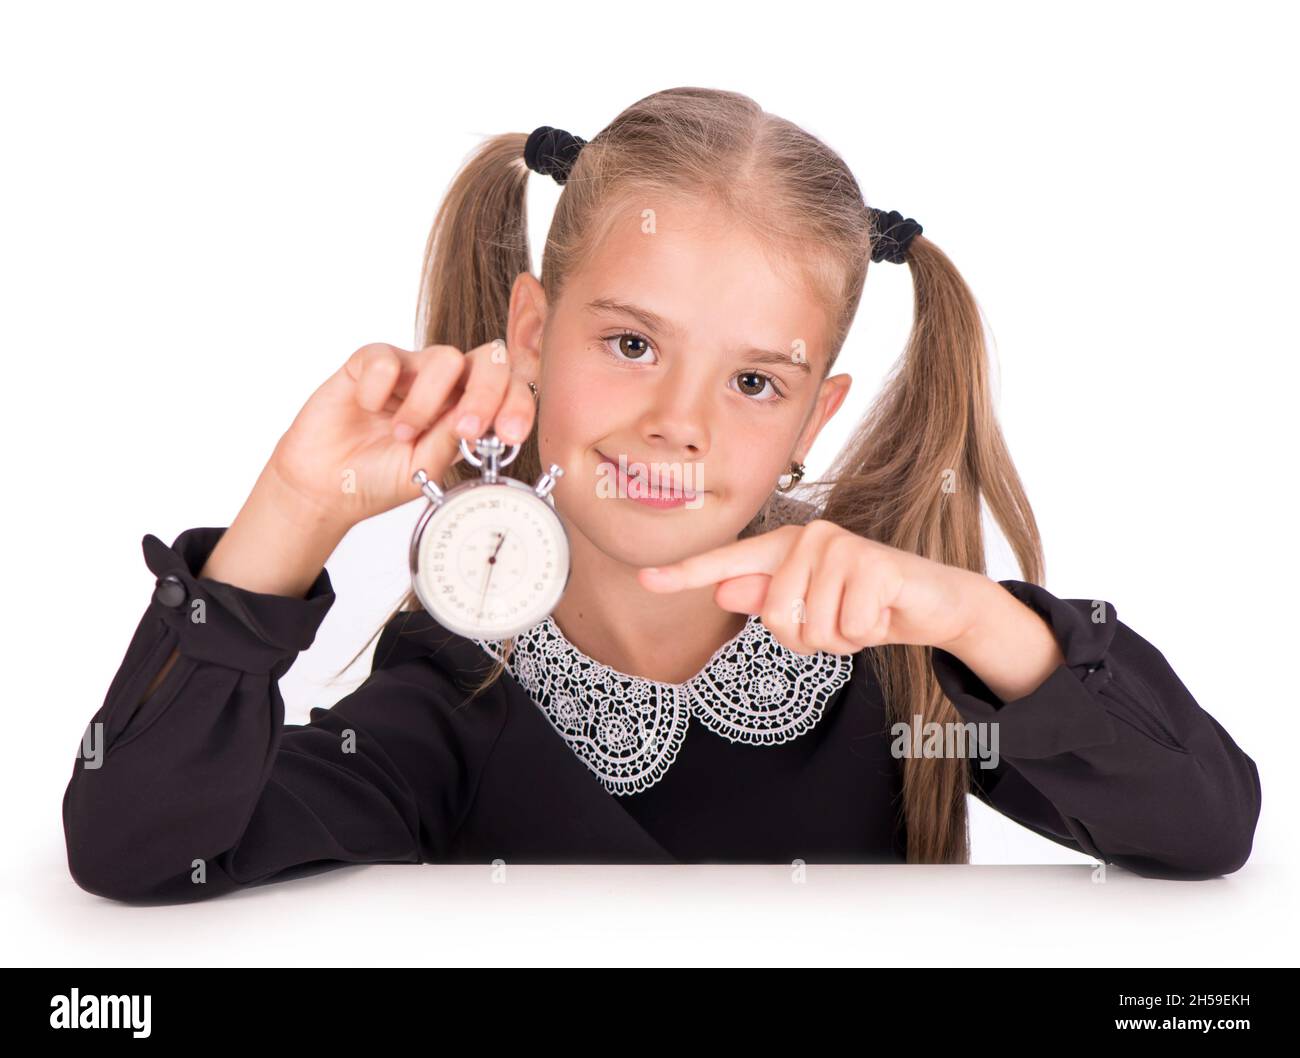 Das kleine Mädchen, blond in einem Schulkleid, weist auf eine Stoppuhr auf weißem Hintergrund hin Stockfoto